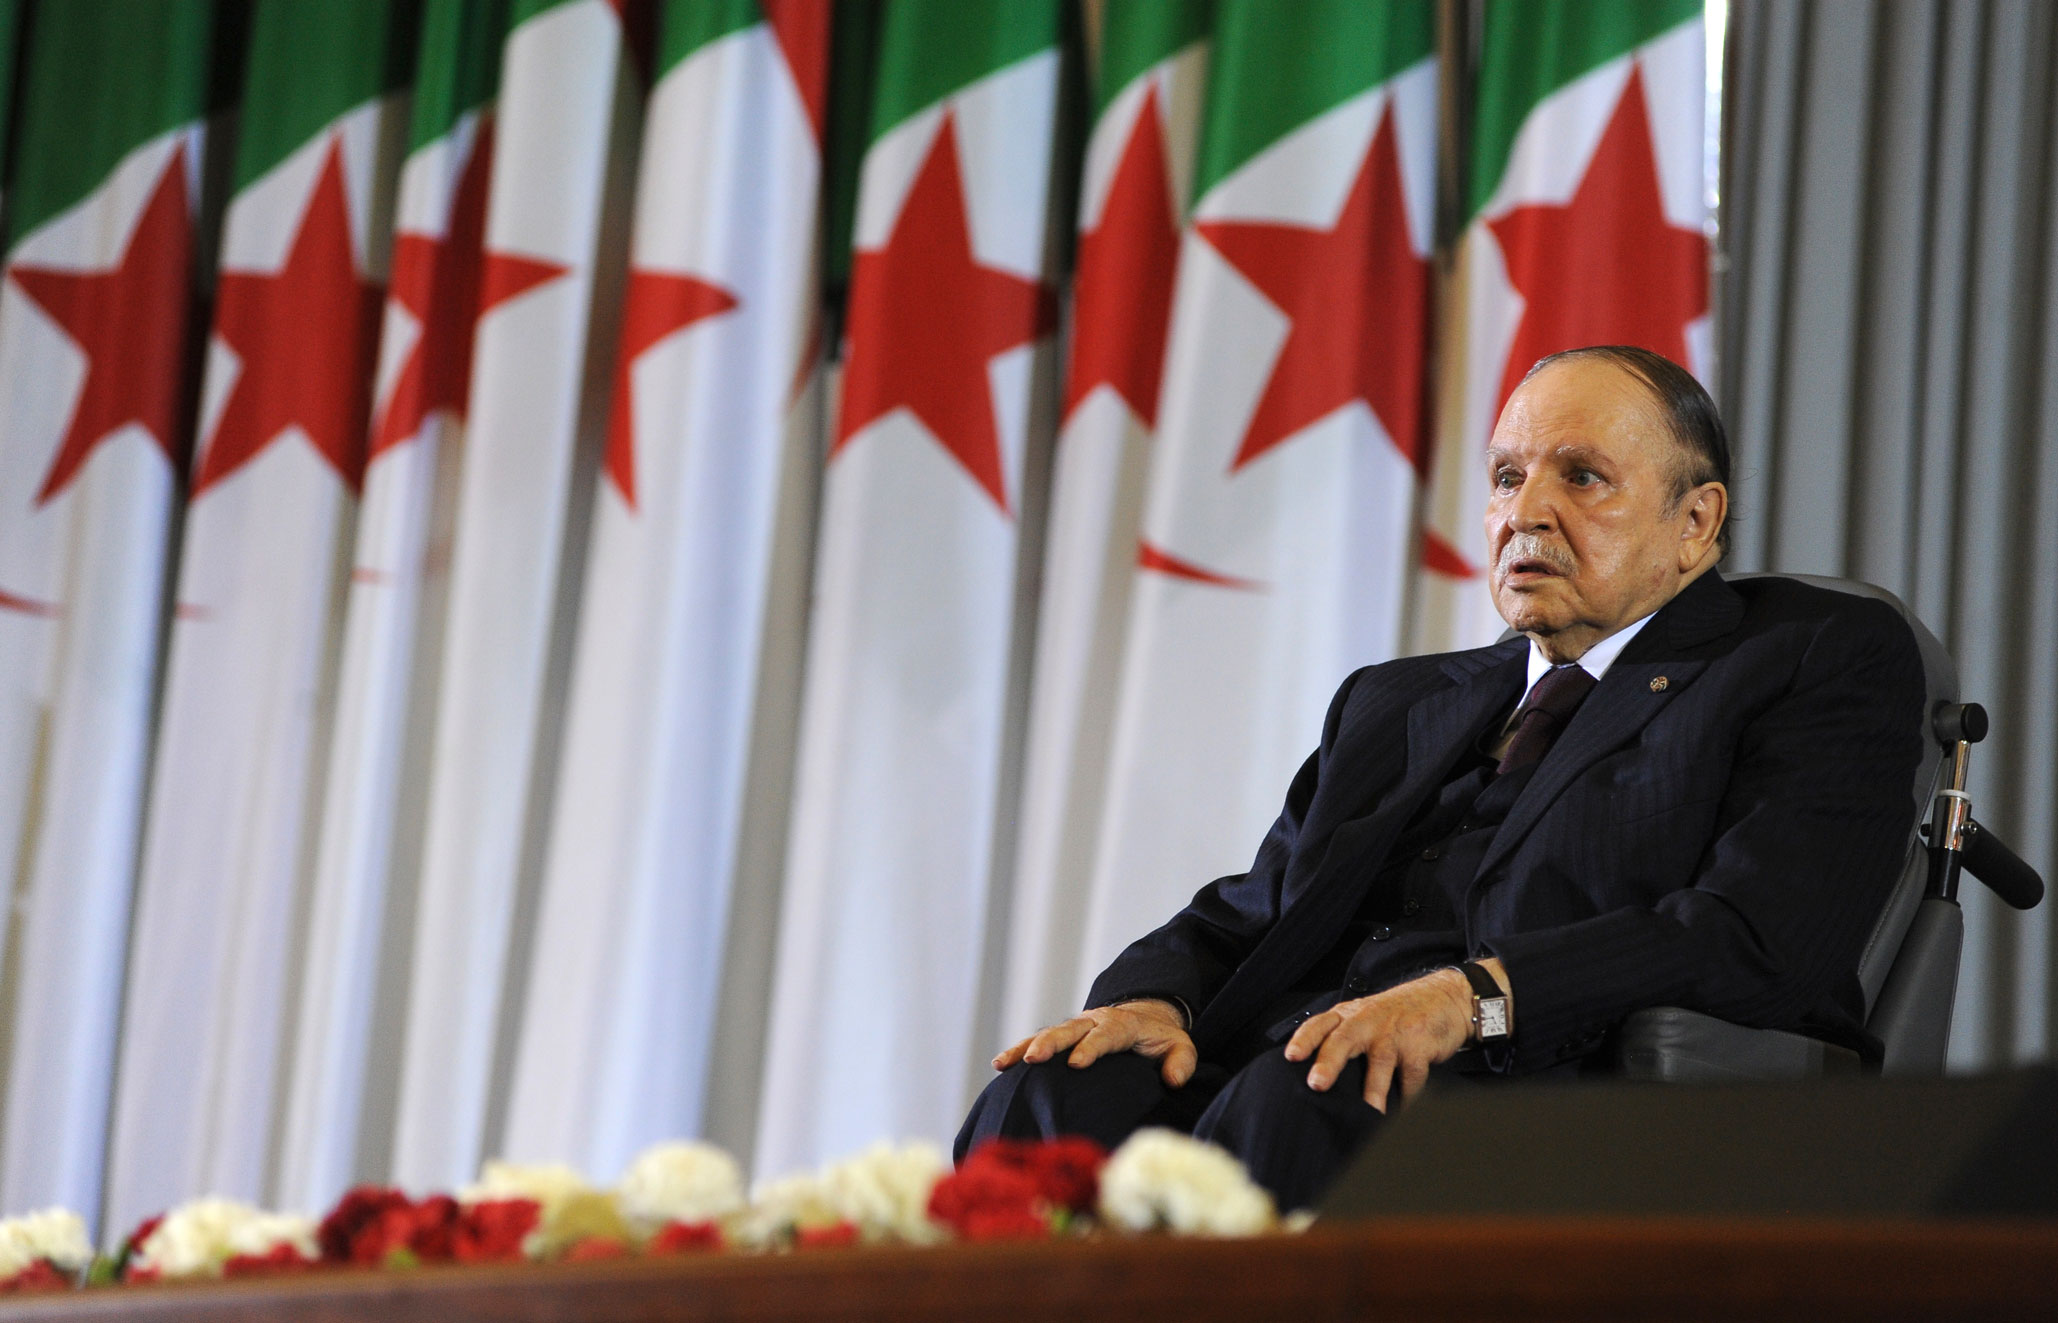 الرئيس الجزائري عبدالعزيز بوتفليقة يعاني من تبعات جلطة دماغية ابعدته عن الحكم لمدة طويلة